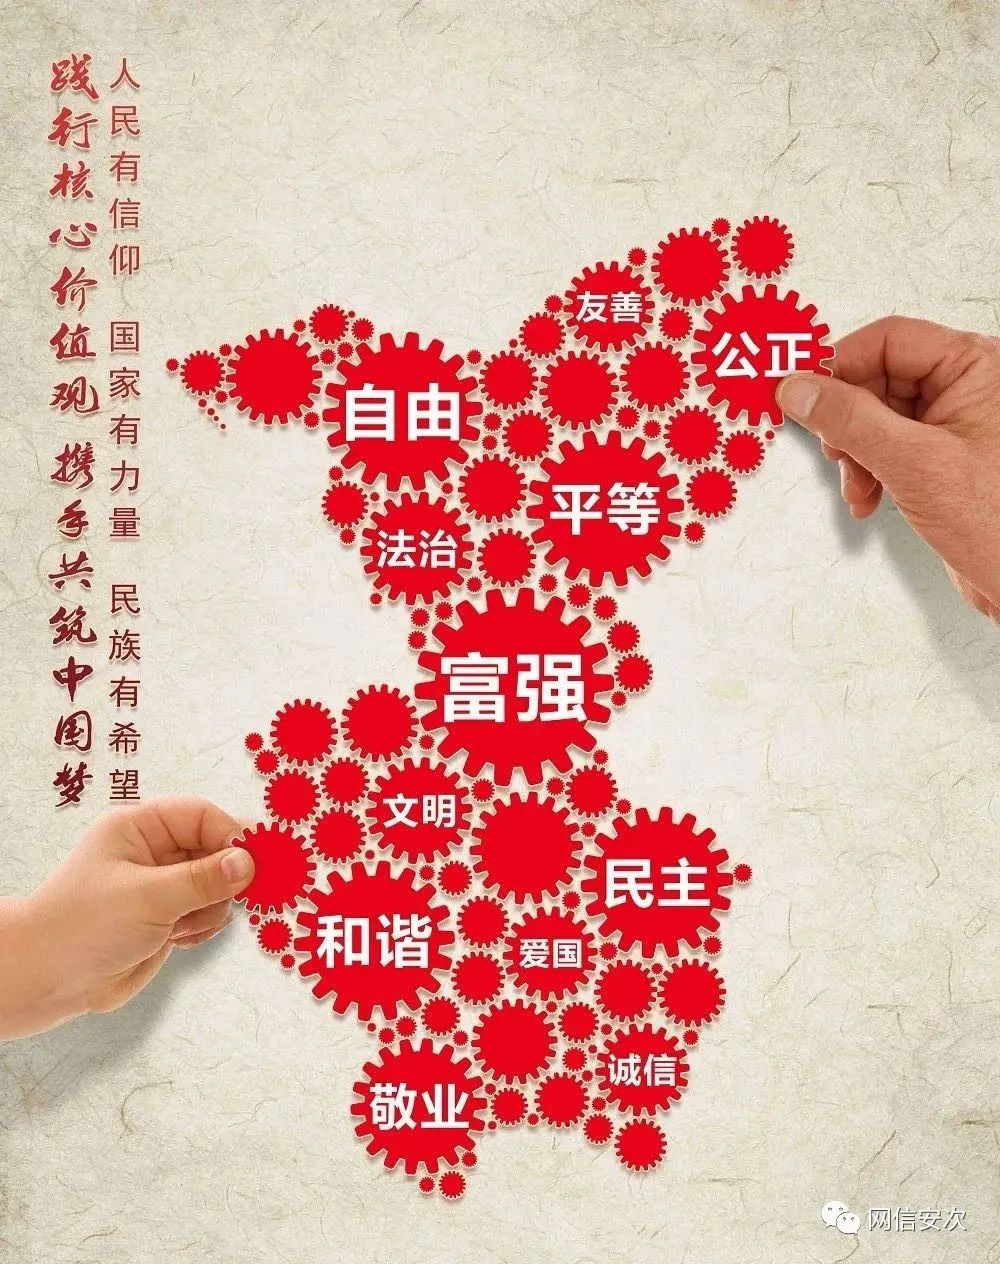 公益广告践行核心价值观携手共筑中国梦